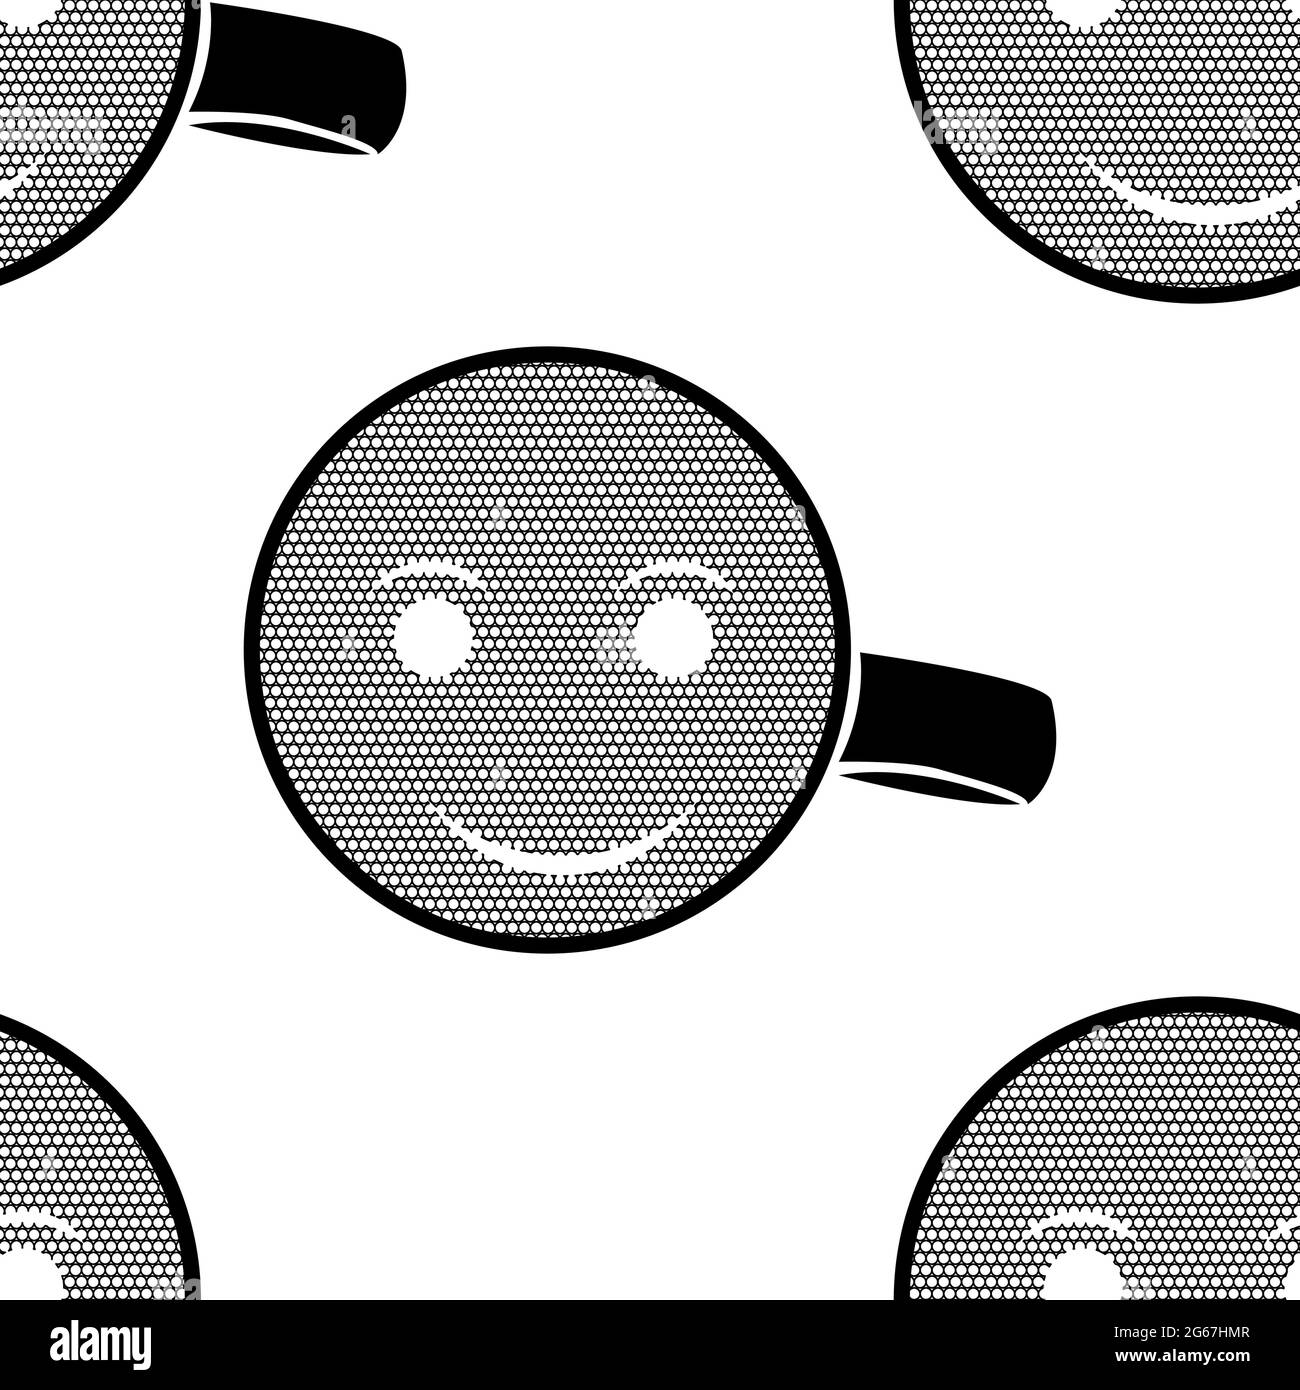 Niedliche Kaffee und Tee-Tasse, Cartoon Lächeln Gesicht blau Nahtloses Muster Hintergrund Stock Vektor